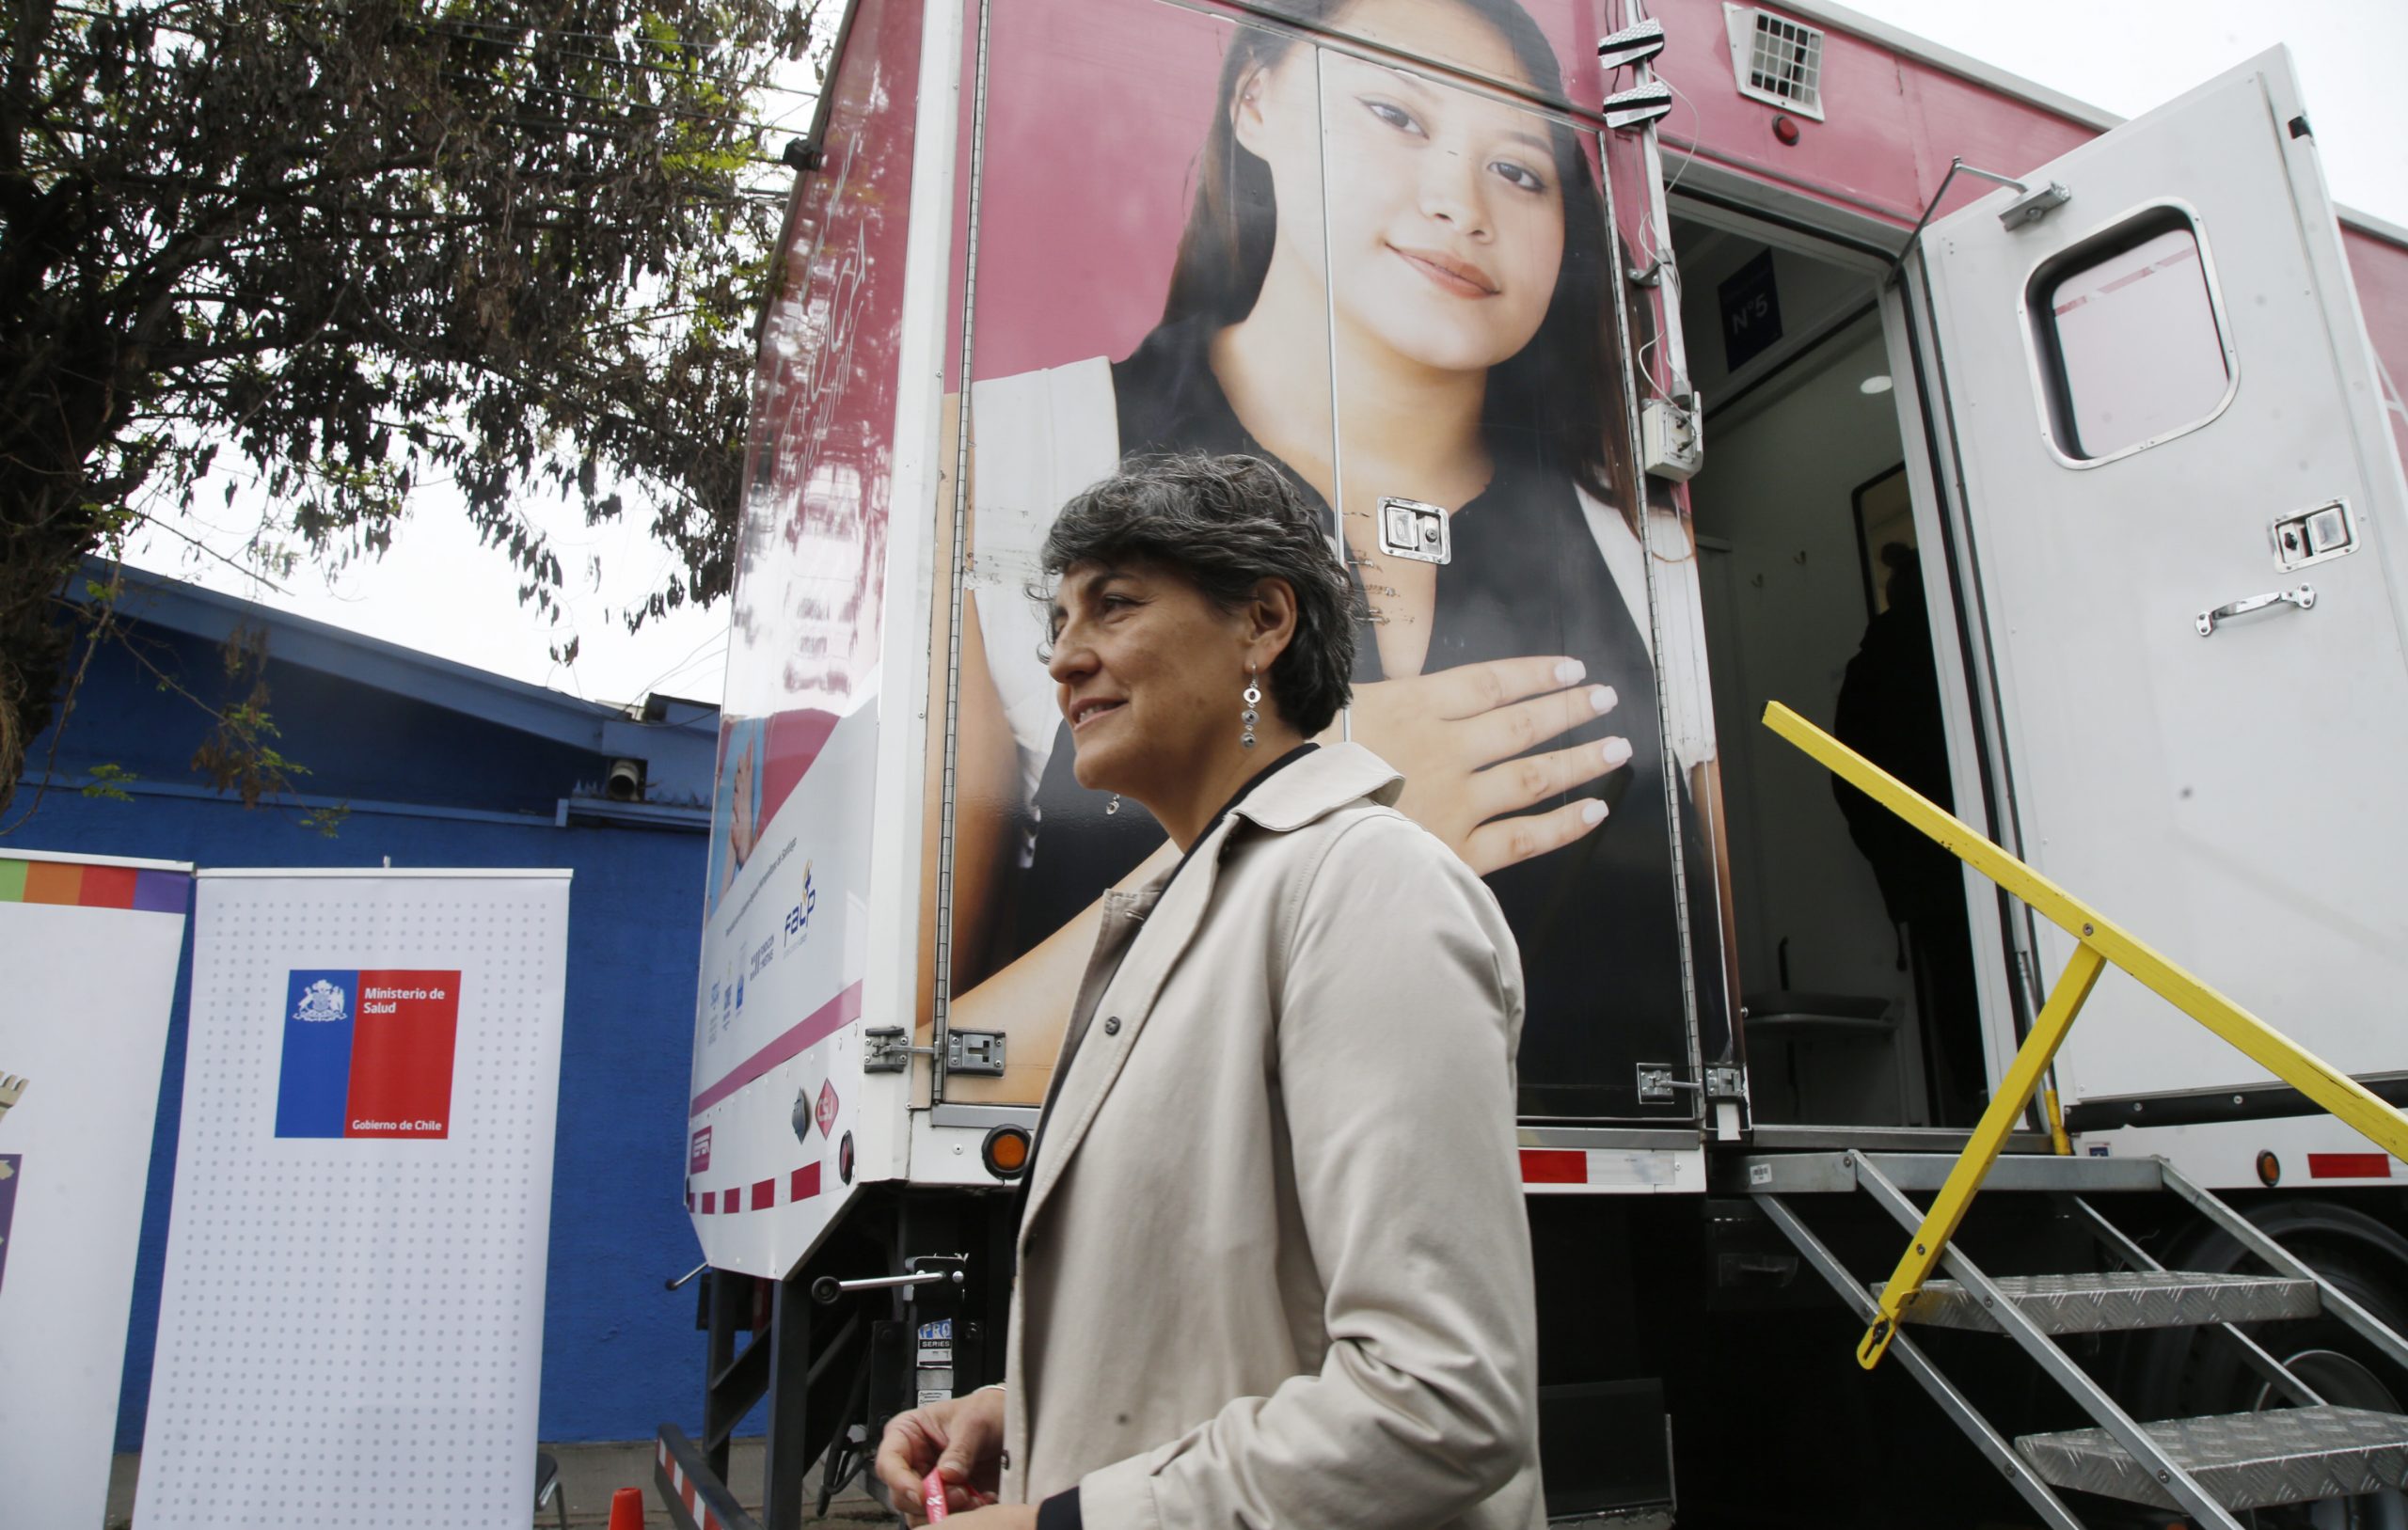 Ministra de Salud da inicio al mes de la prevención del cáncer de mama: campaña “Aunque cueste, primero nosotras”